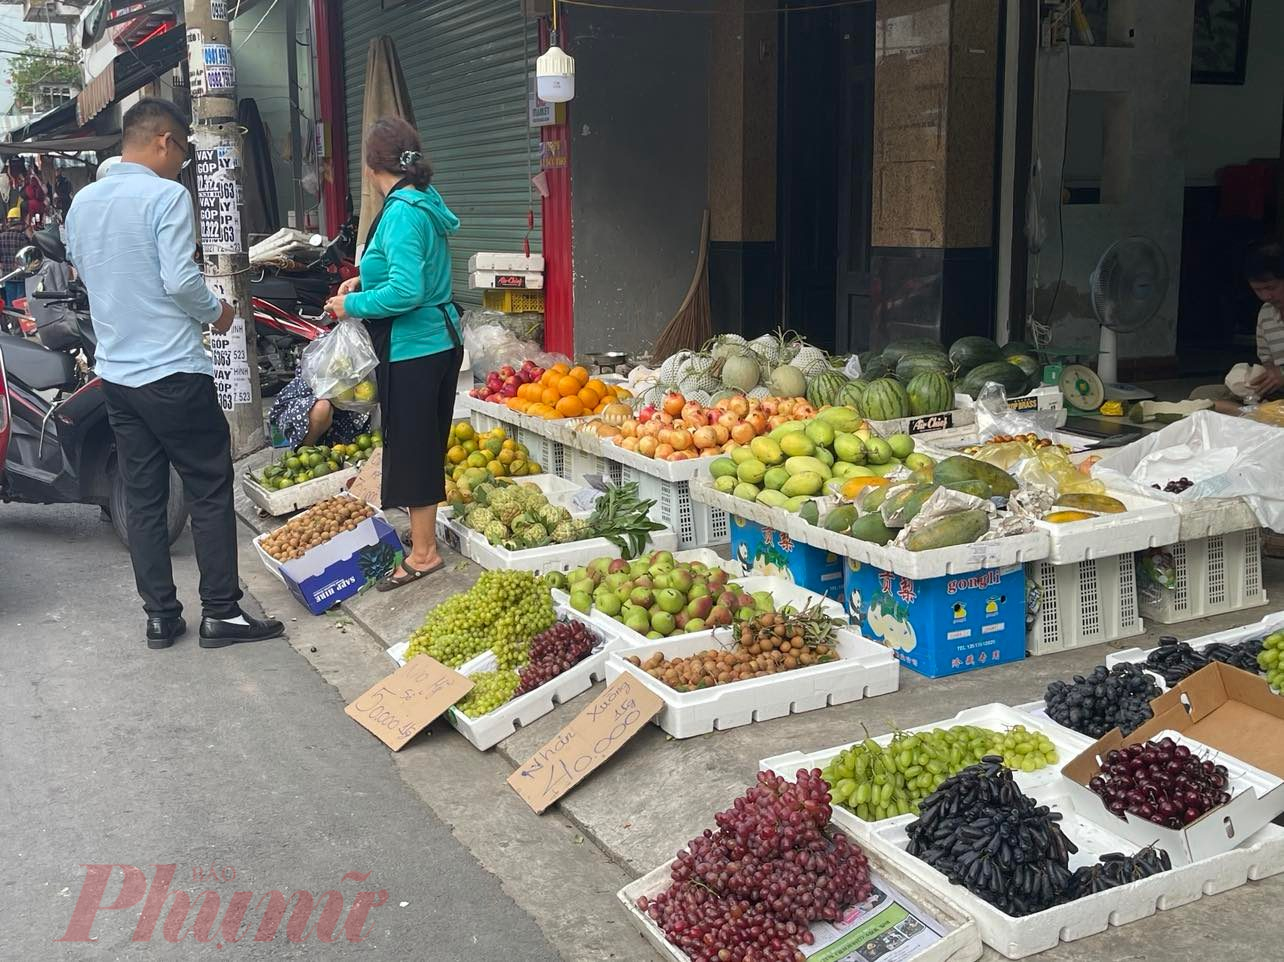 Tại các điểm bán trái cây, trái cây nội vẫn chiếm số nhiều hơn so với trái cây Trung Quốc.